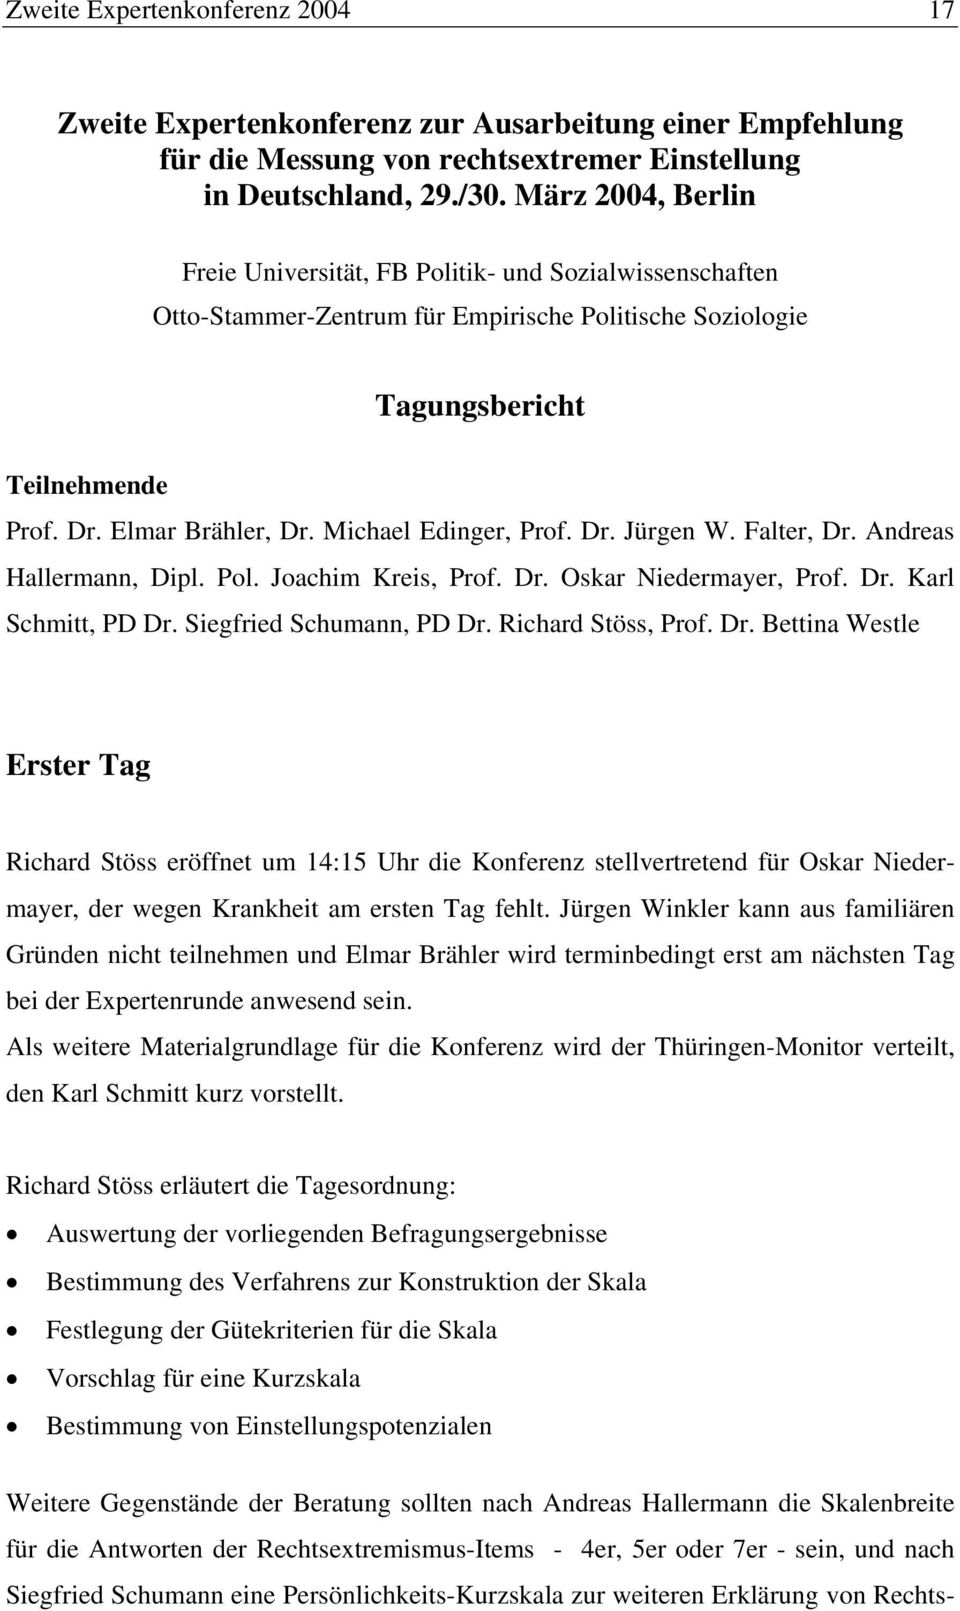 Michael Edinger, Prof. Dr. Jürgen W. Falter, Dr. Andreas Hallermann, Dipl. Pol. Joachim Kreis, Prof. Dr. Oskar Niedermayer, Prof. Dr. Karl Schmitt, PD Dr. Siegfried Schumann, PD Dr.